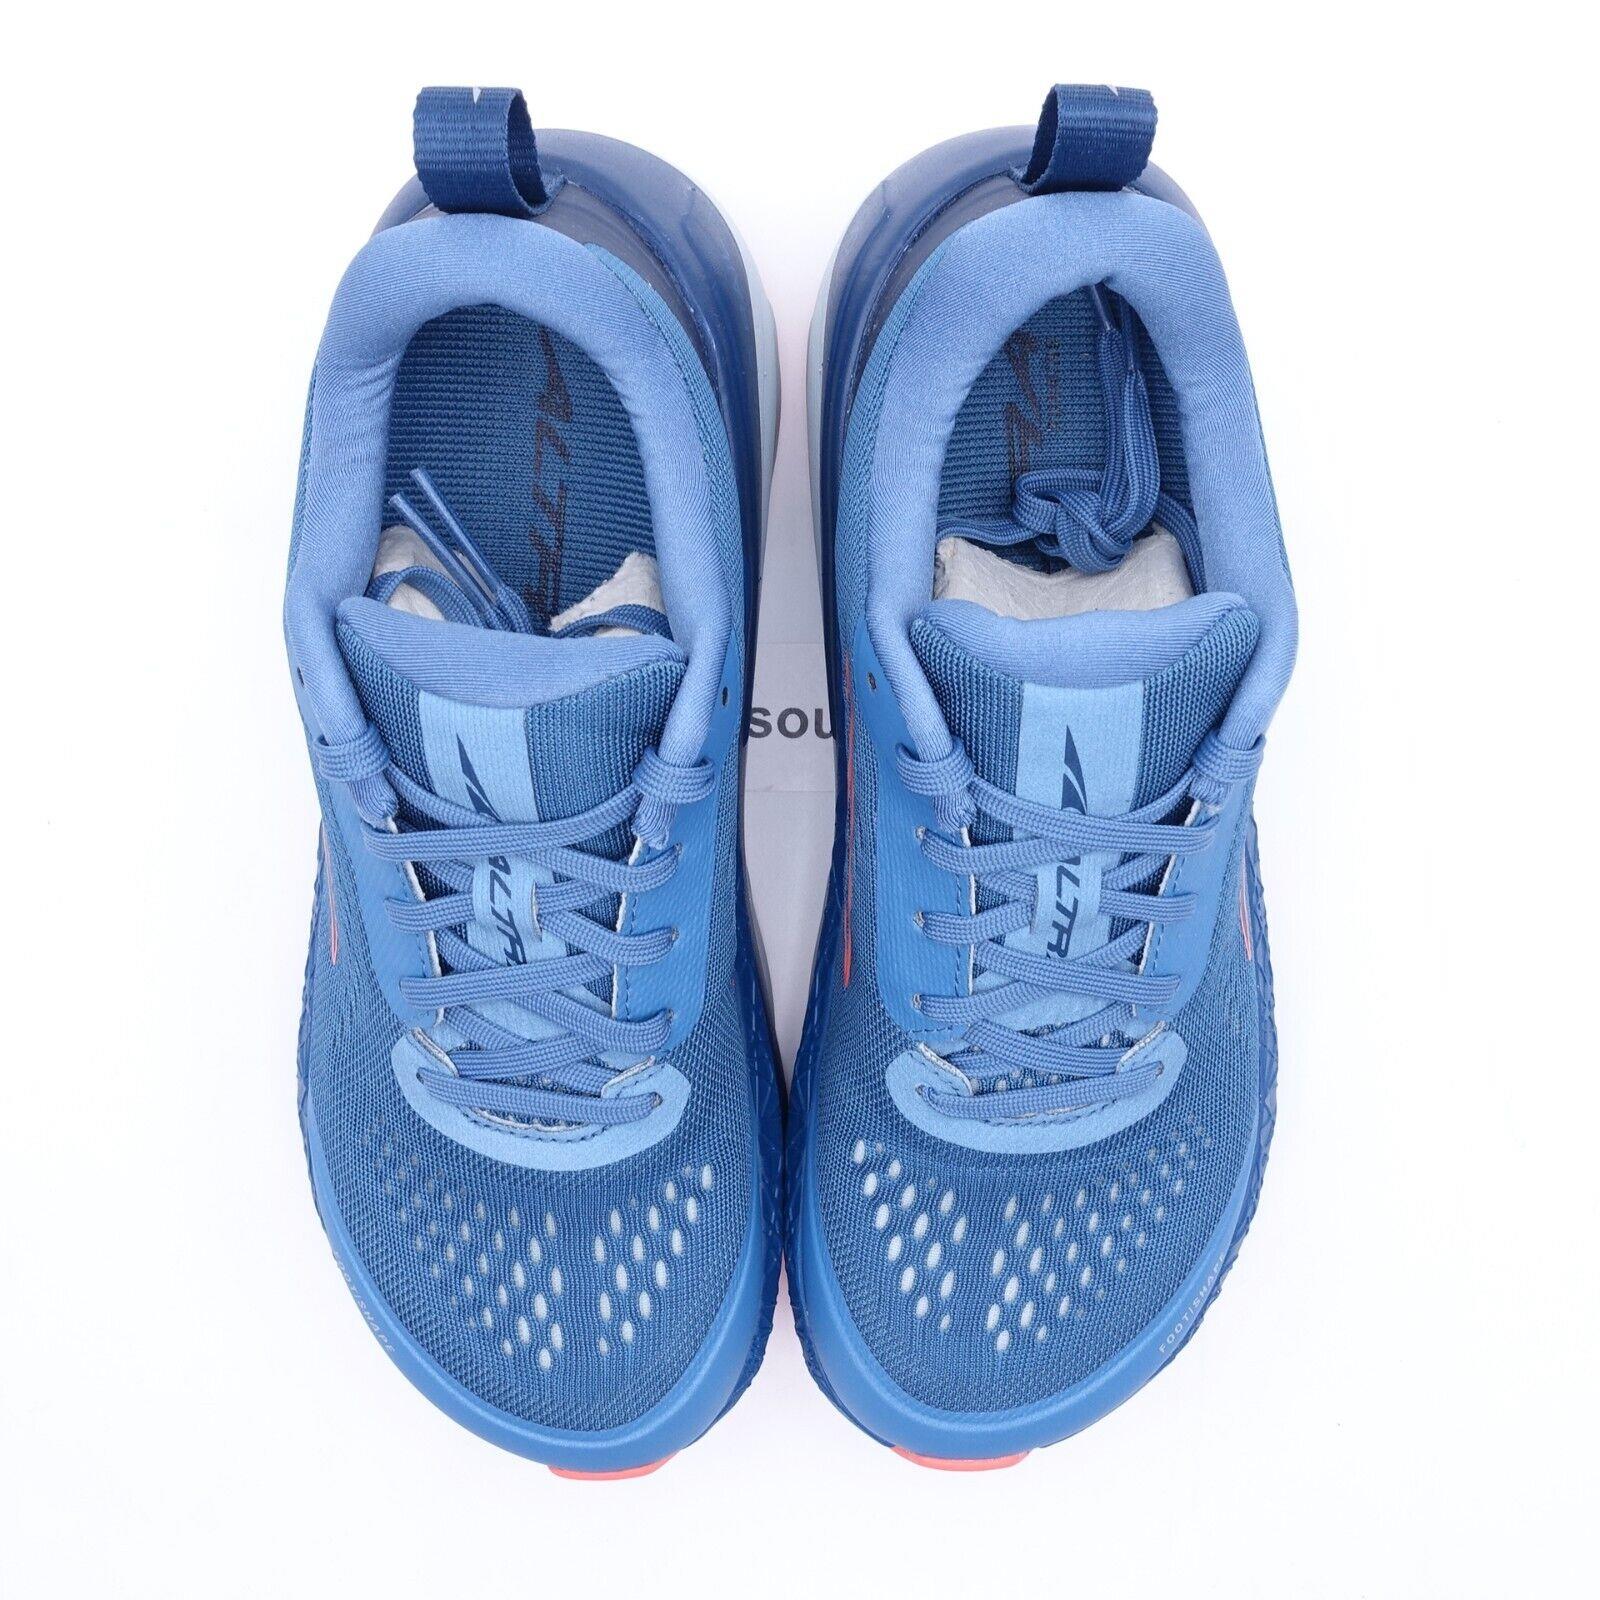 Altra shoes Paradigm - Blue , Blue/Coral Manufacturer 3